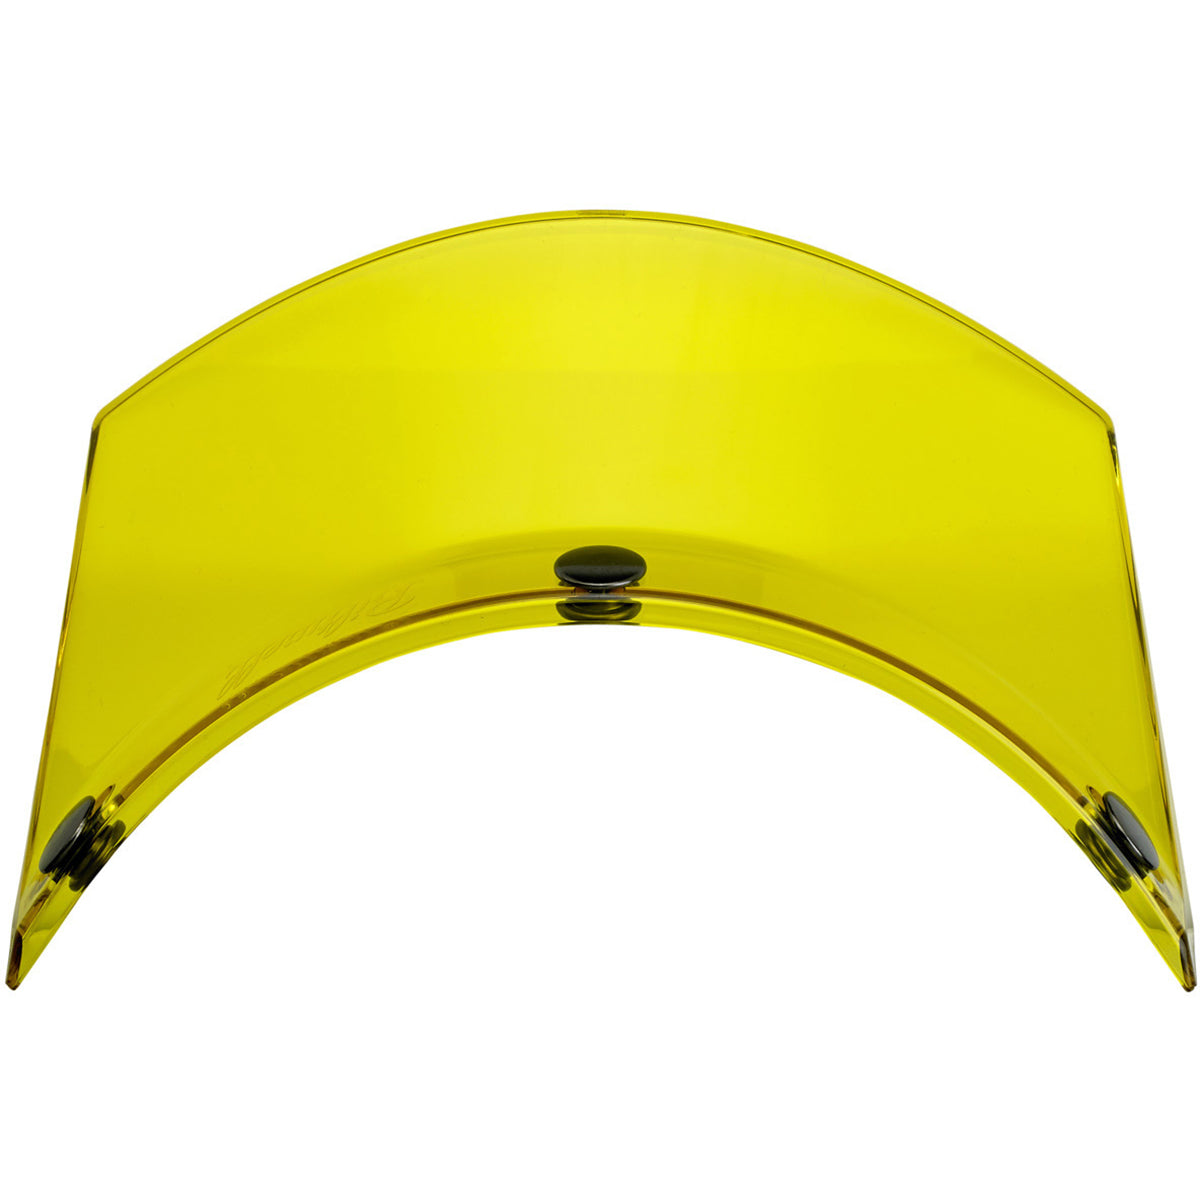 Moto Visor - Yellow